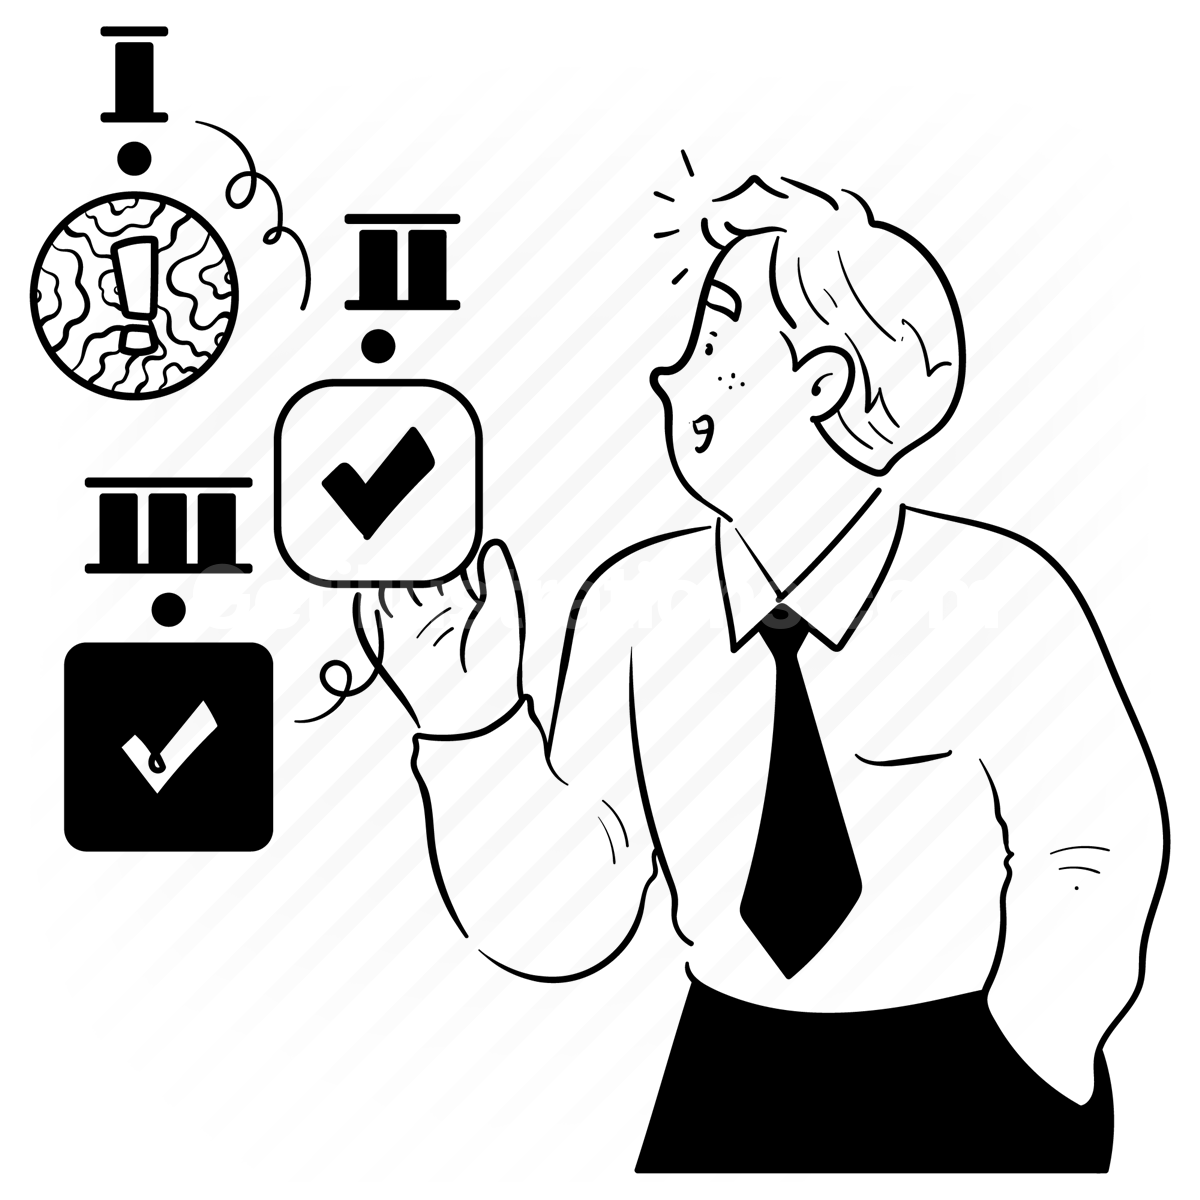 Task Management illustration